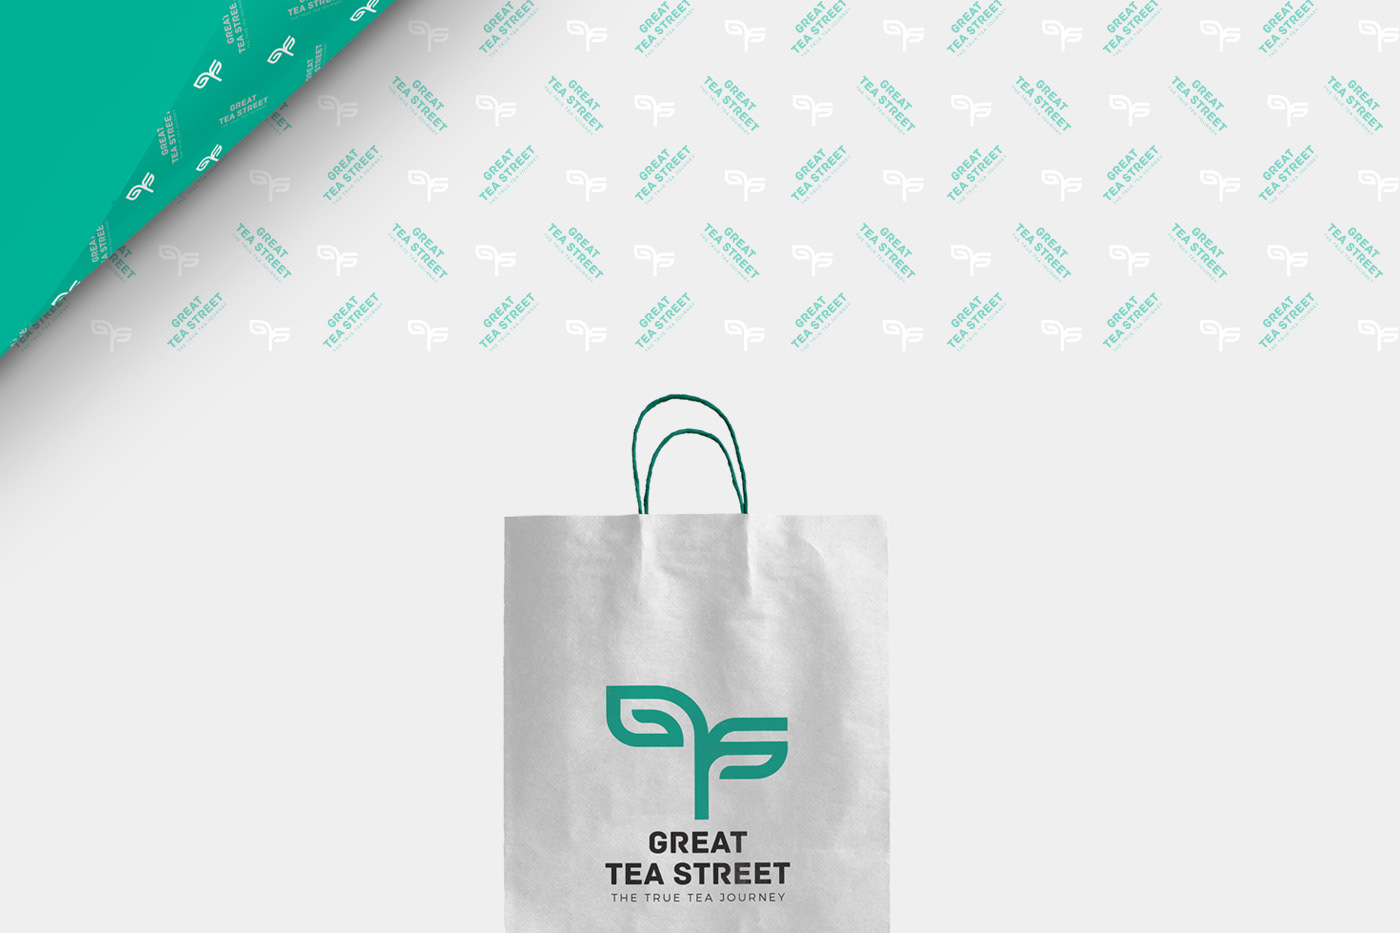 tea Loose leaf brand logo stationary Packaging print design UK